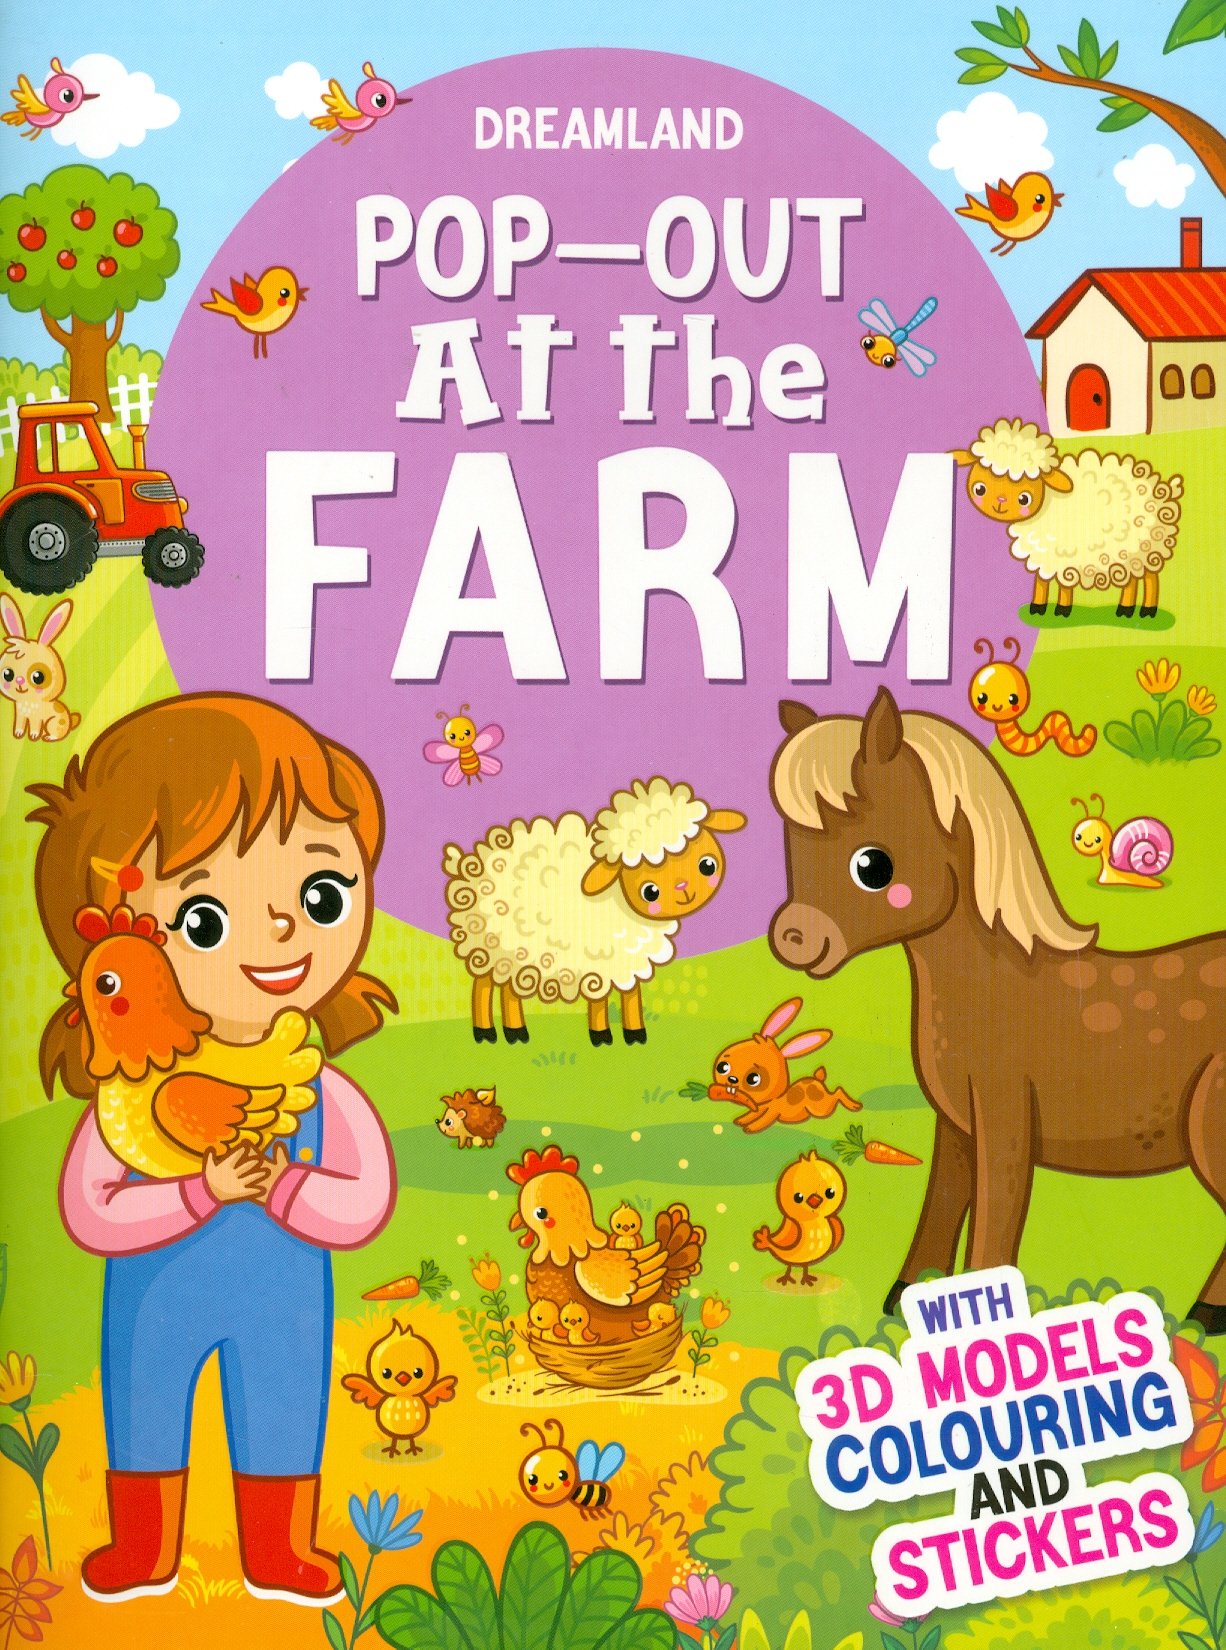 Pop-Out At The Farm - With 3D Models Colouring And Stickers (Sách Bật Ra - Tại Trang Trại - Với Hình Dán Và Tô Màu Mô Hình 3D)